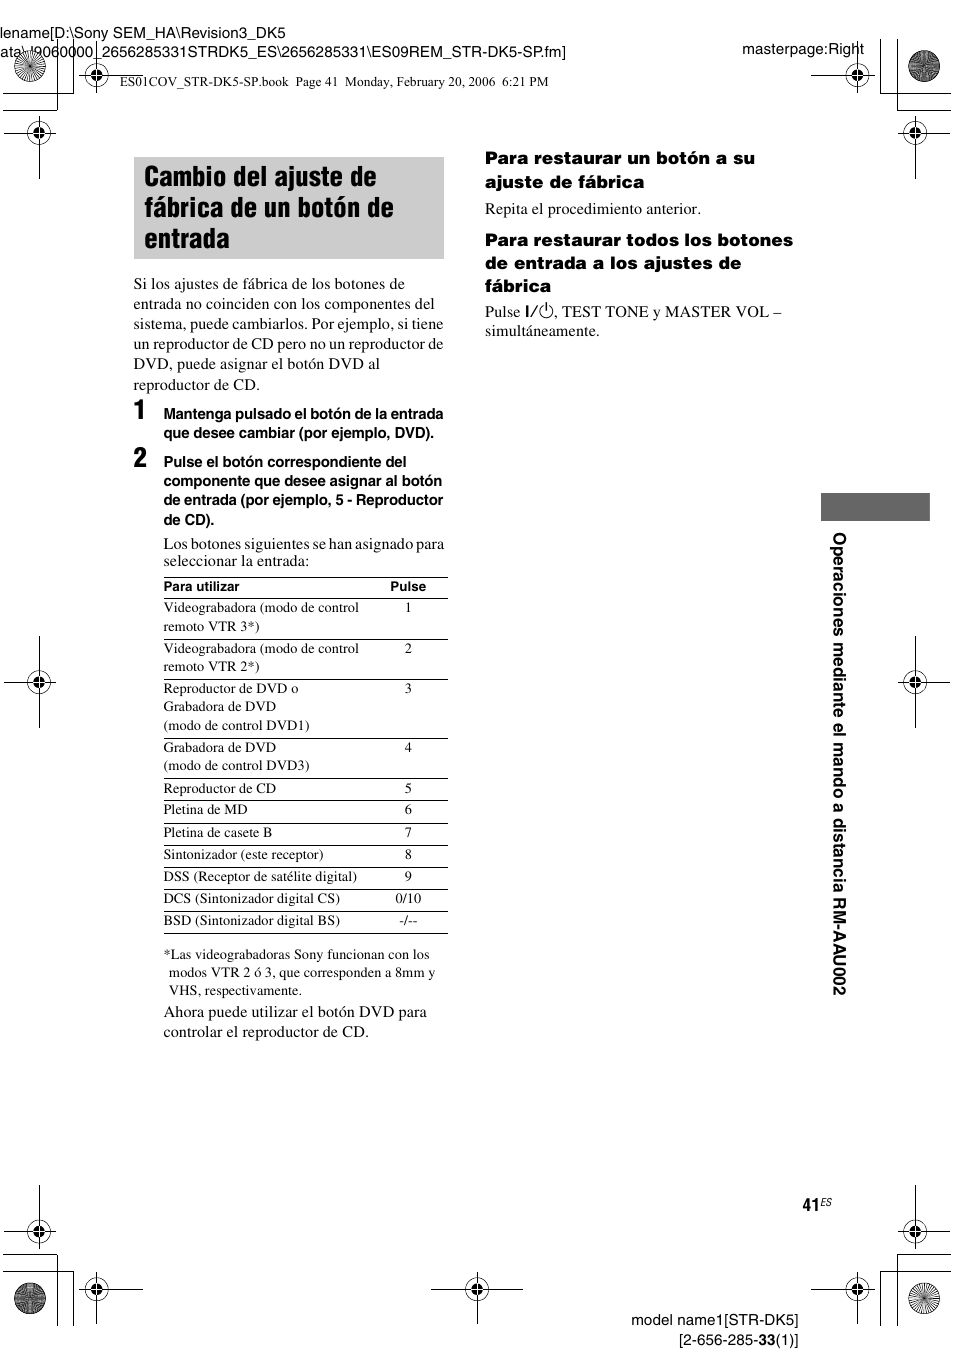 Cambio del ajuste de fábrica de un, Botón de entrada | Sony STR-DK5 Manual del usuario | Página 41 / 48